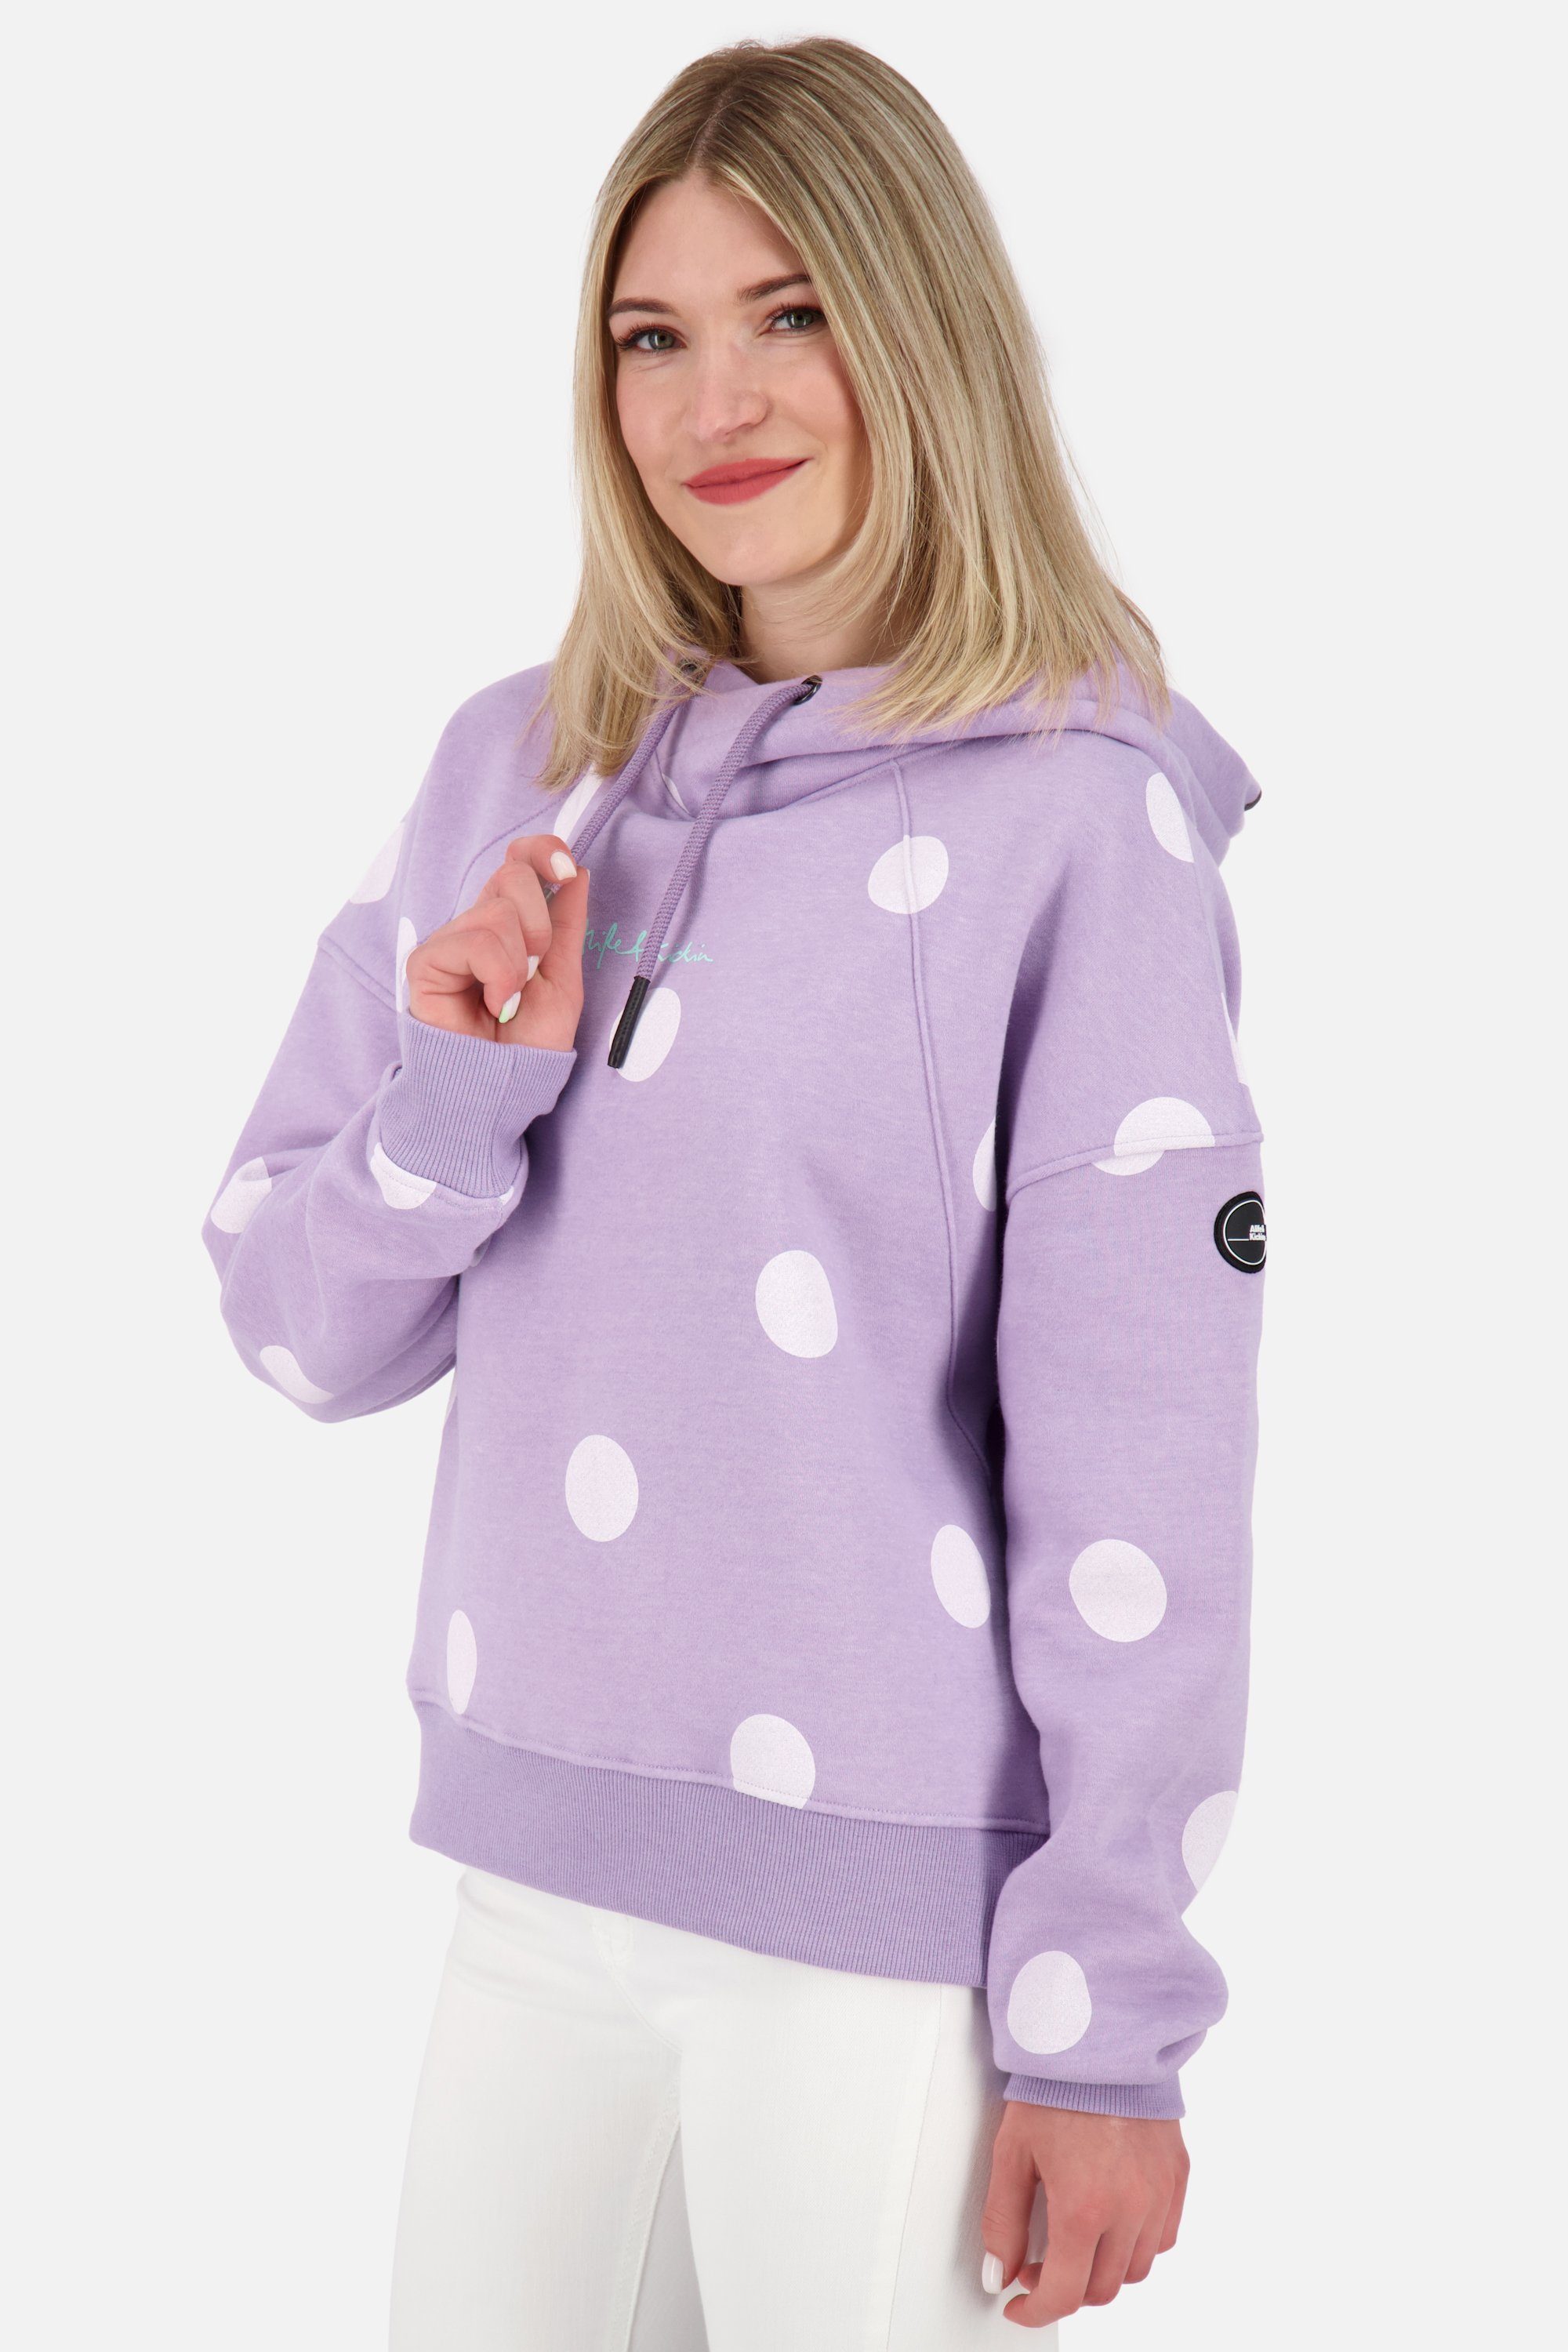 digital & melange B lavender Kapuzensweatshirt, Kickin Alife JessyAK Pullover Hoodie Damen Kapuzensweatshirt Sweatshirt